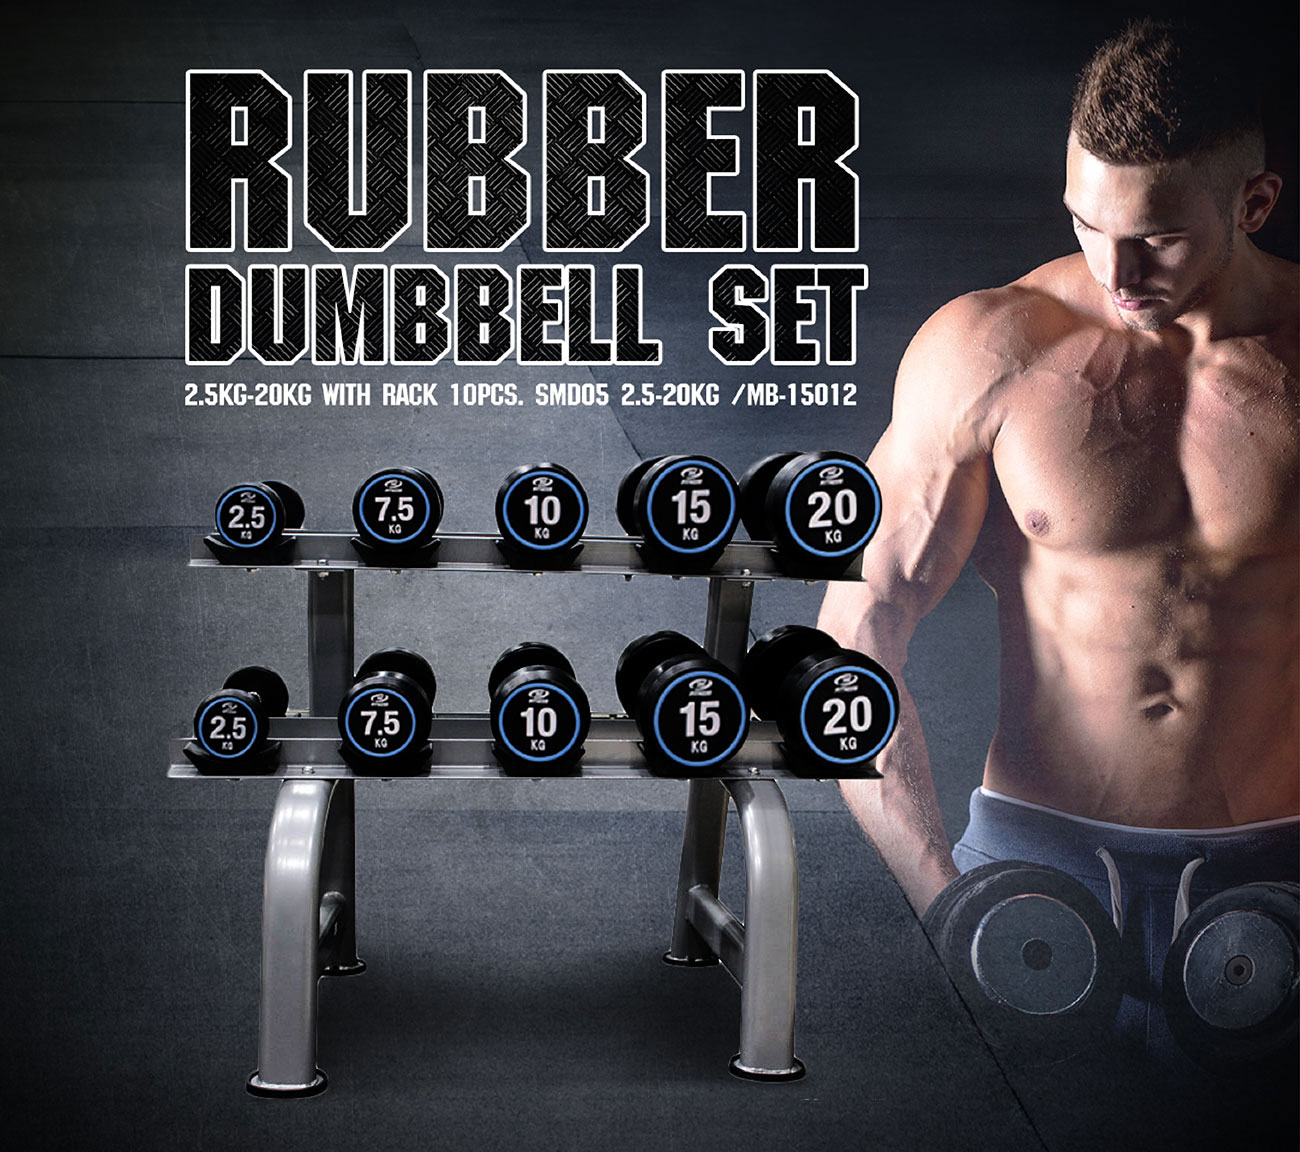 Rubber Dumbbell Set 2.5KG - 20KG with Rack 10pcs.